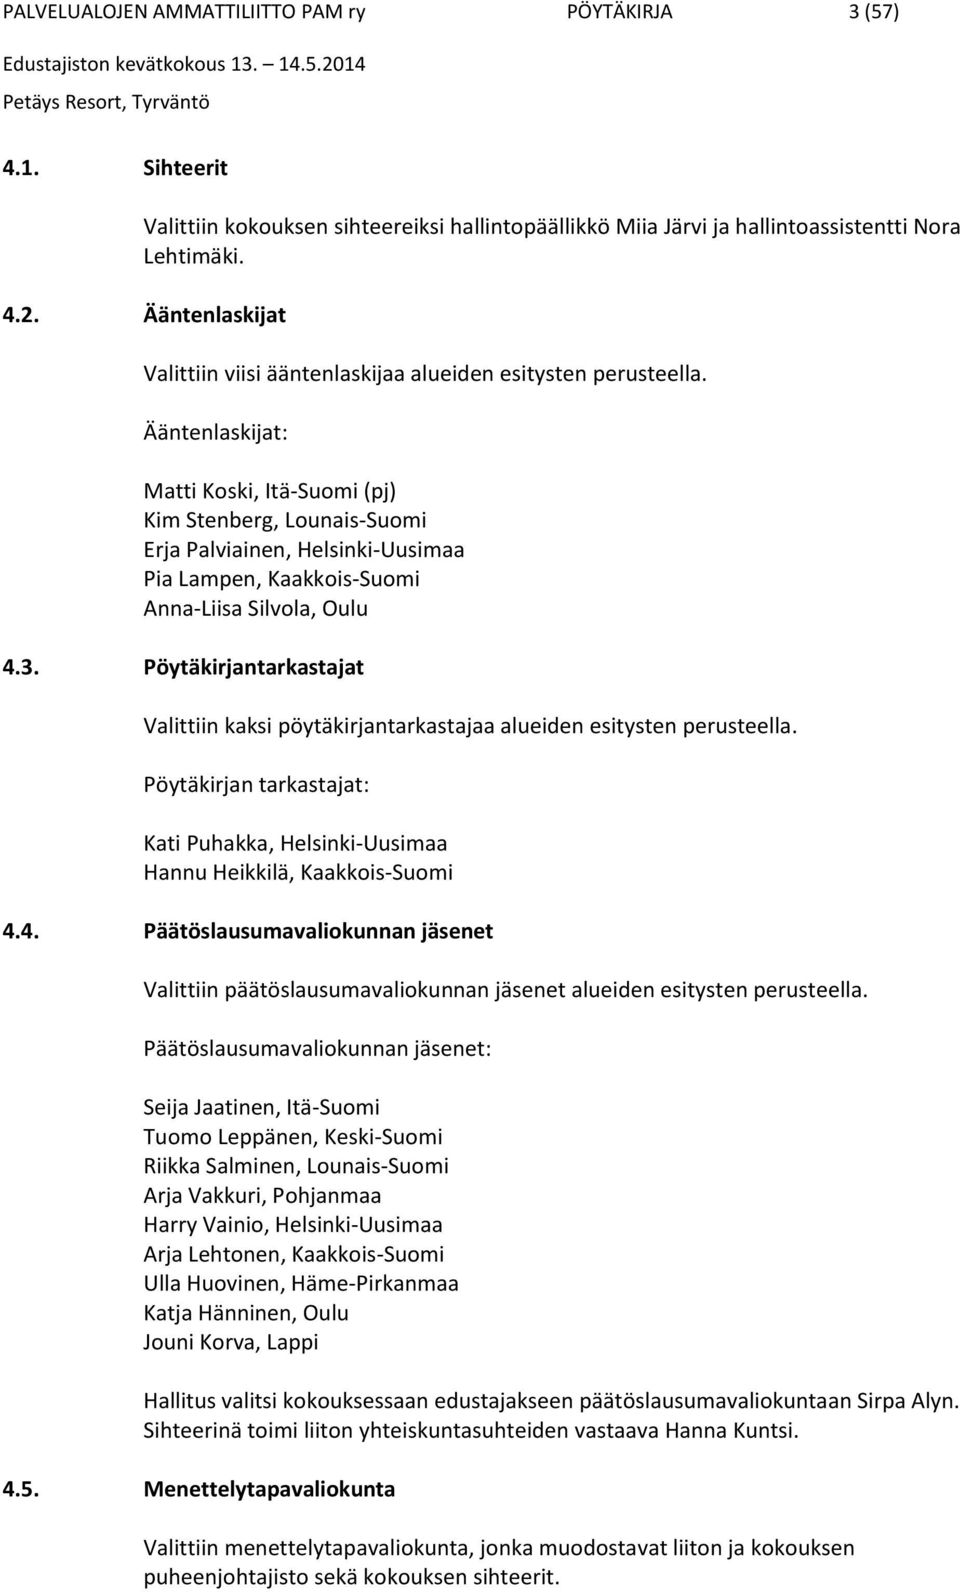 Ääntenlaskijat: Matti Koski, Itä-Suomi (pj) Kim Stenberg, Lounais-Suomi Erja Palviainen, Helsinki-Uusimaa Pia Lampen, Kaakkois-Suomi Anna-Liisa Silvola, Oulu 4.3.